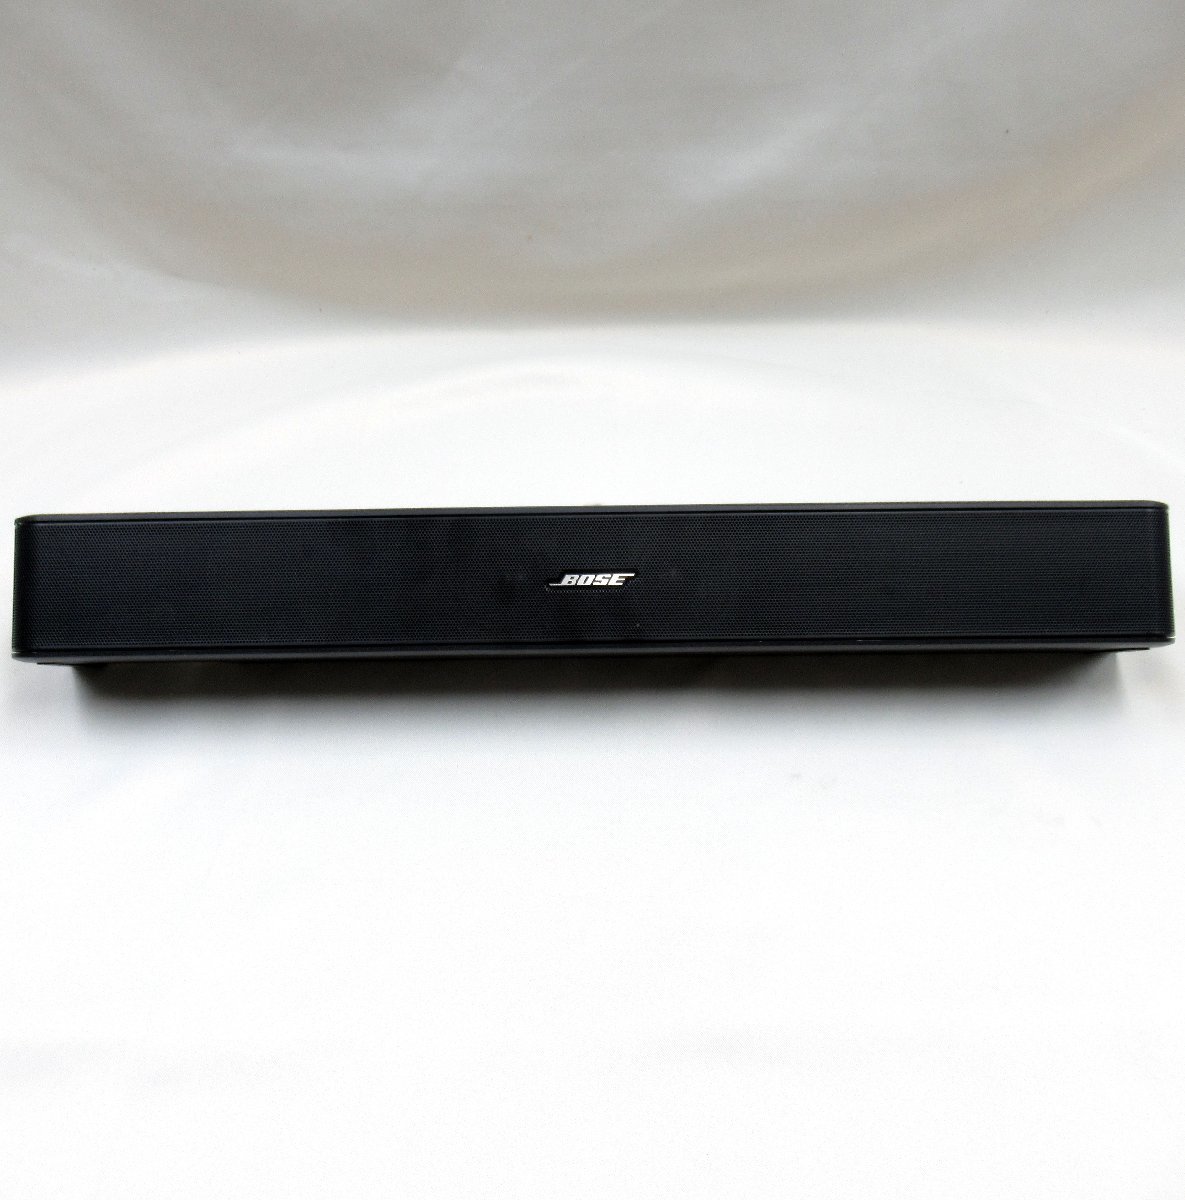 33022円 新しいコレクション Bose TV Speaker テレビスピーカー Bluetooth 接続 59.4 cm W x 5.6 H 10.2 D 2.0 kg ブラック